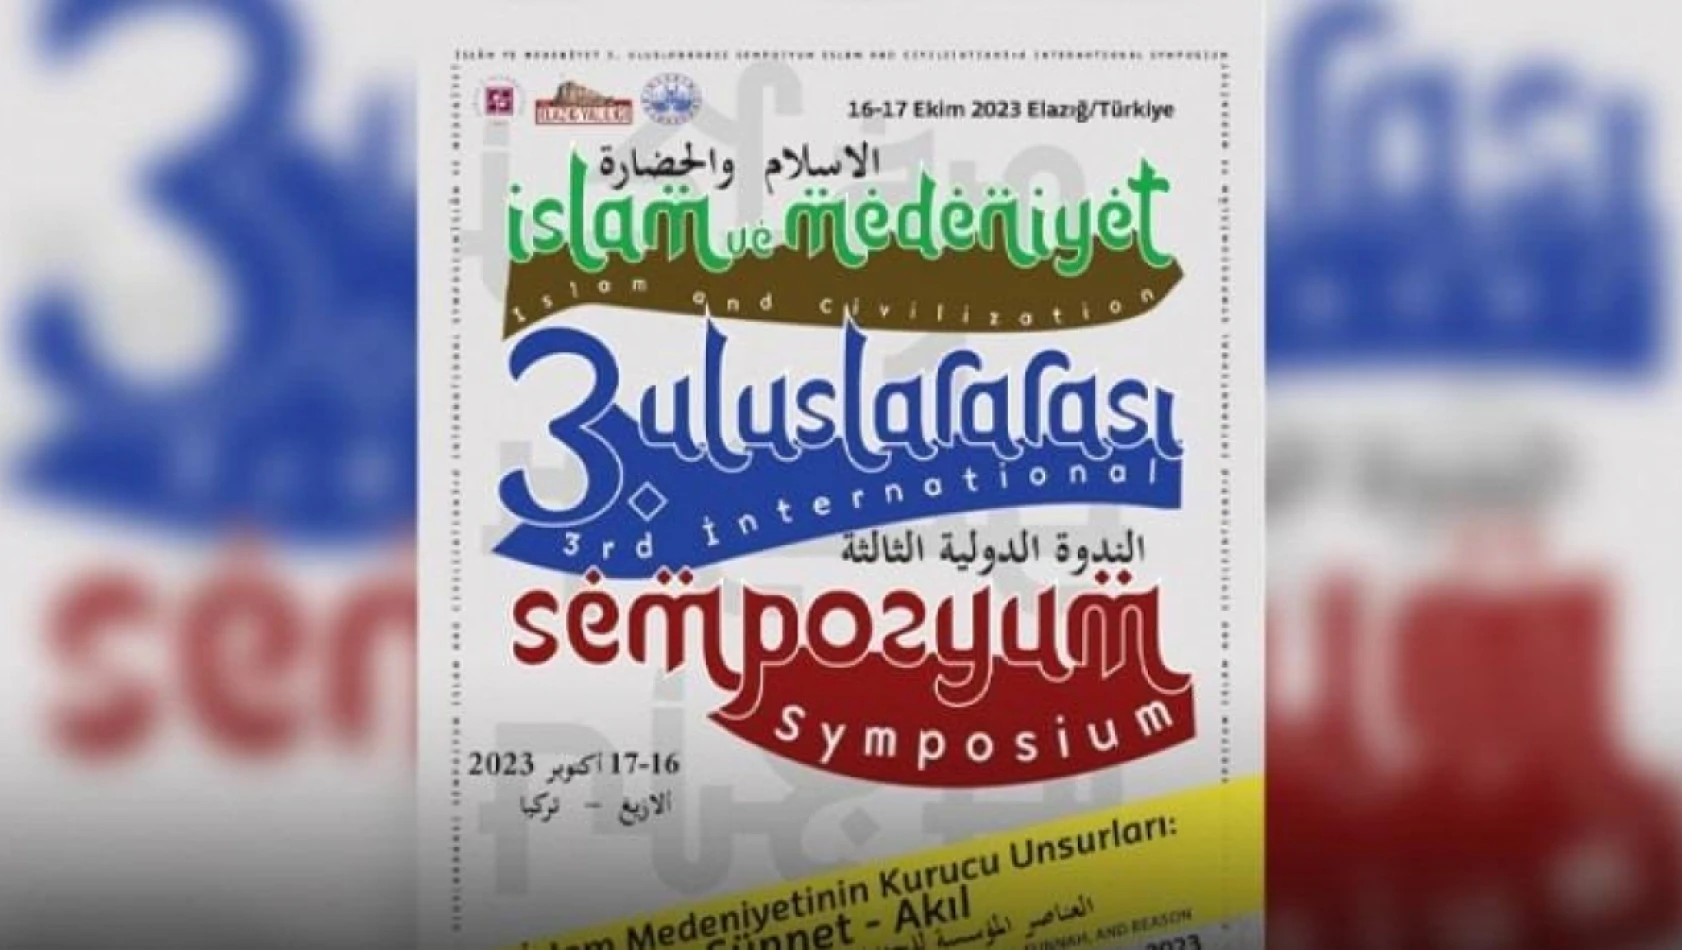 FÜ'de islam ve medeniyet 3. uluslararası sempozyumu düzenlenecek